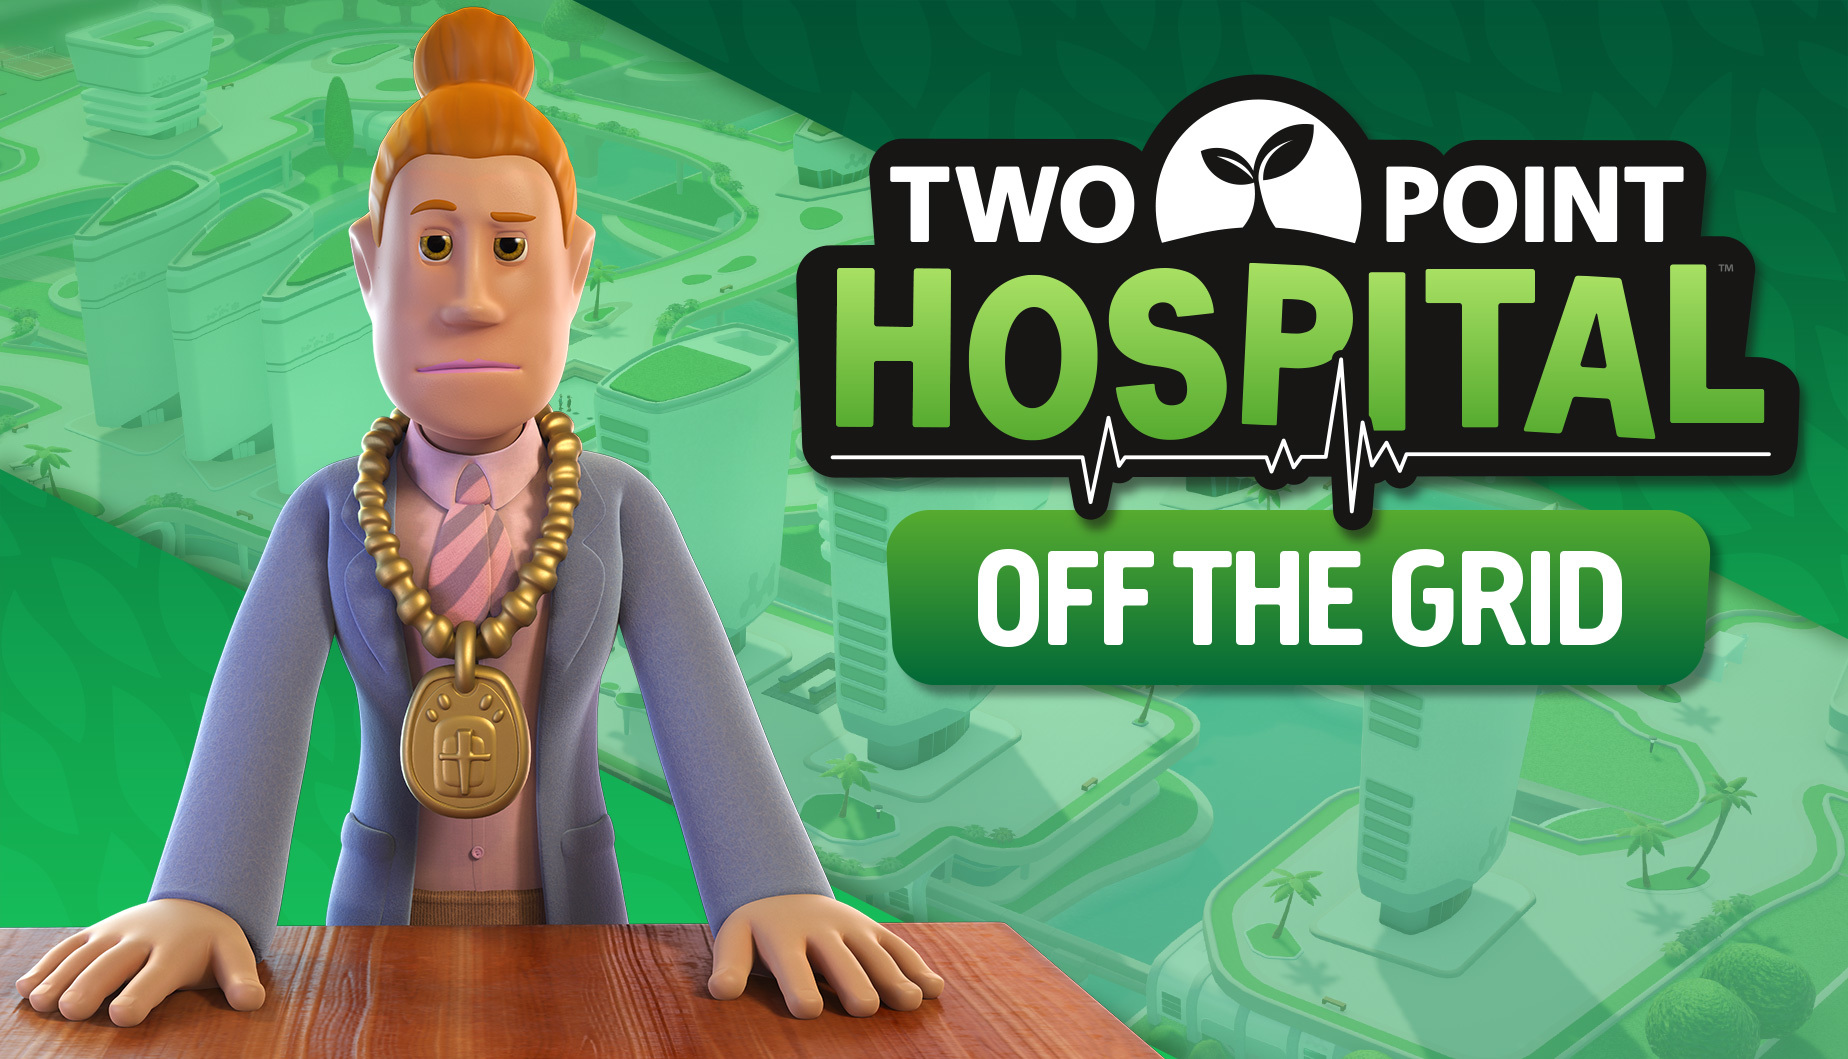 《雙點醫院 》新DLC 3月18日上線  預購特惠已開啟